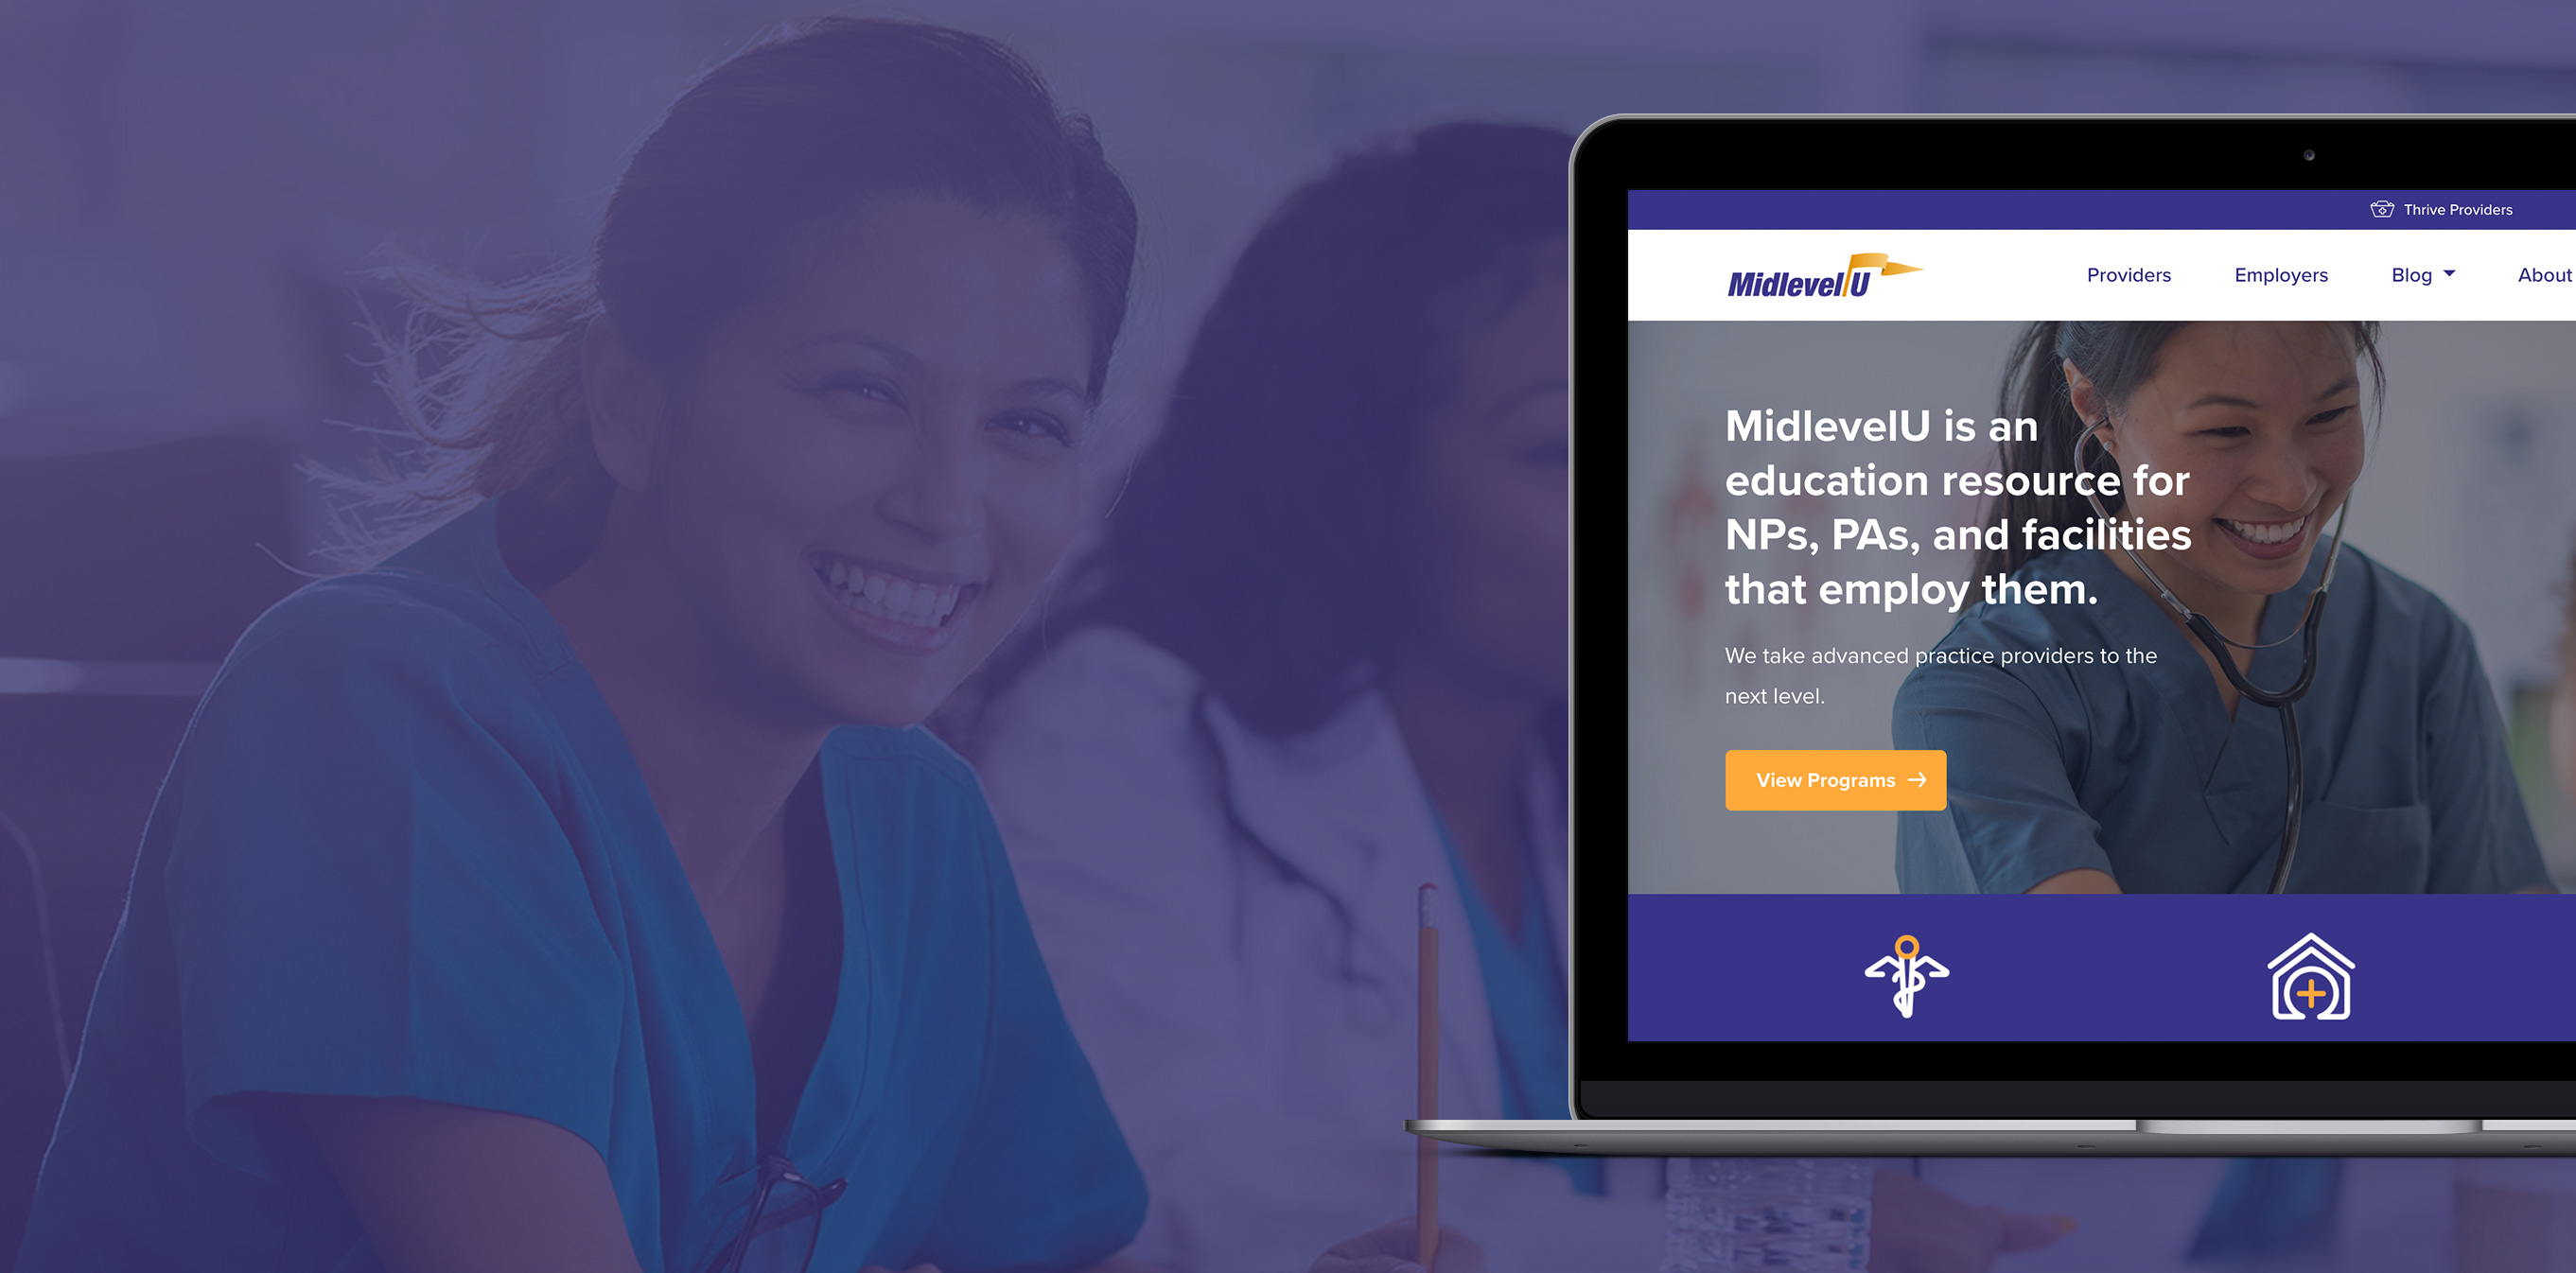 Website Design for Nashville Healthcare Company MidlevelU, by DesignUps